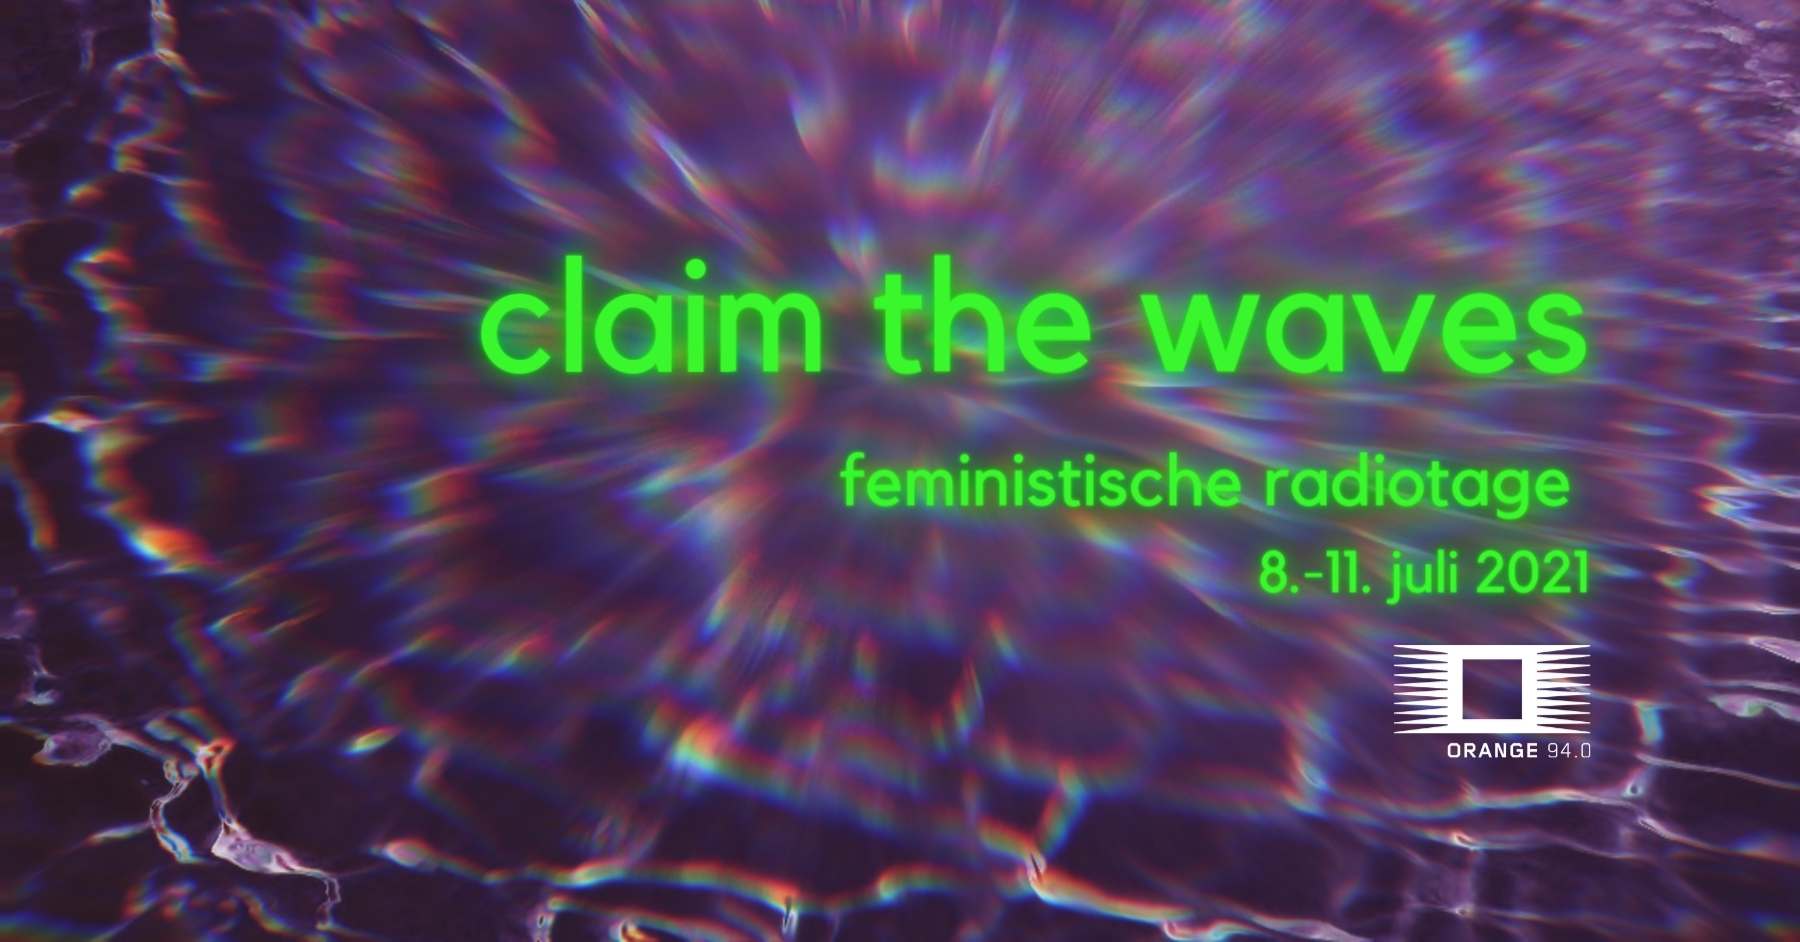 claim the waves - feministische radiotage 8.-11. juli 2021